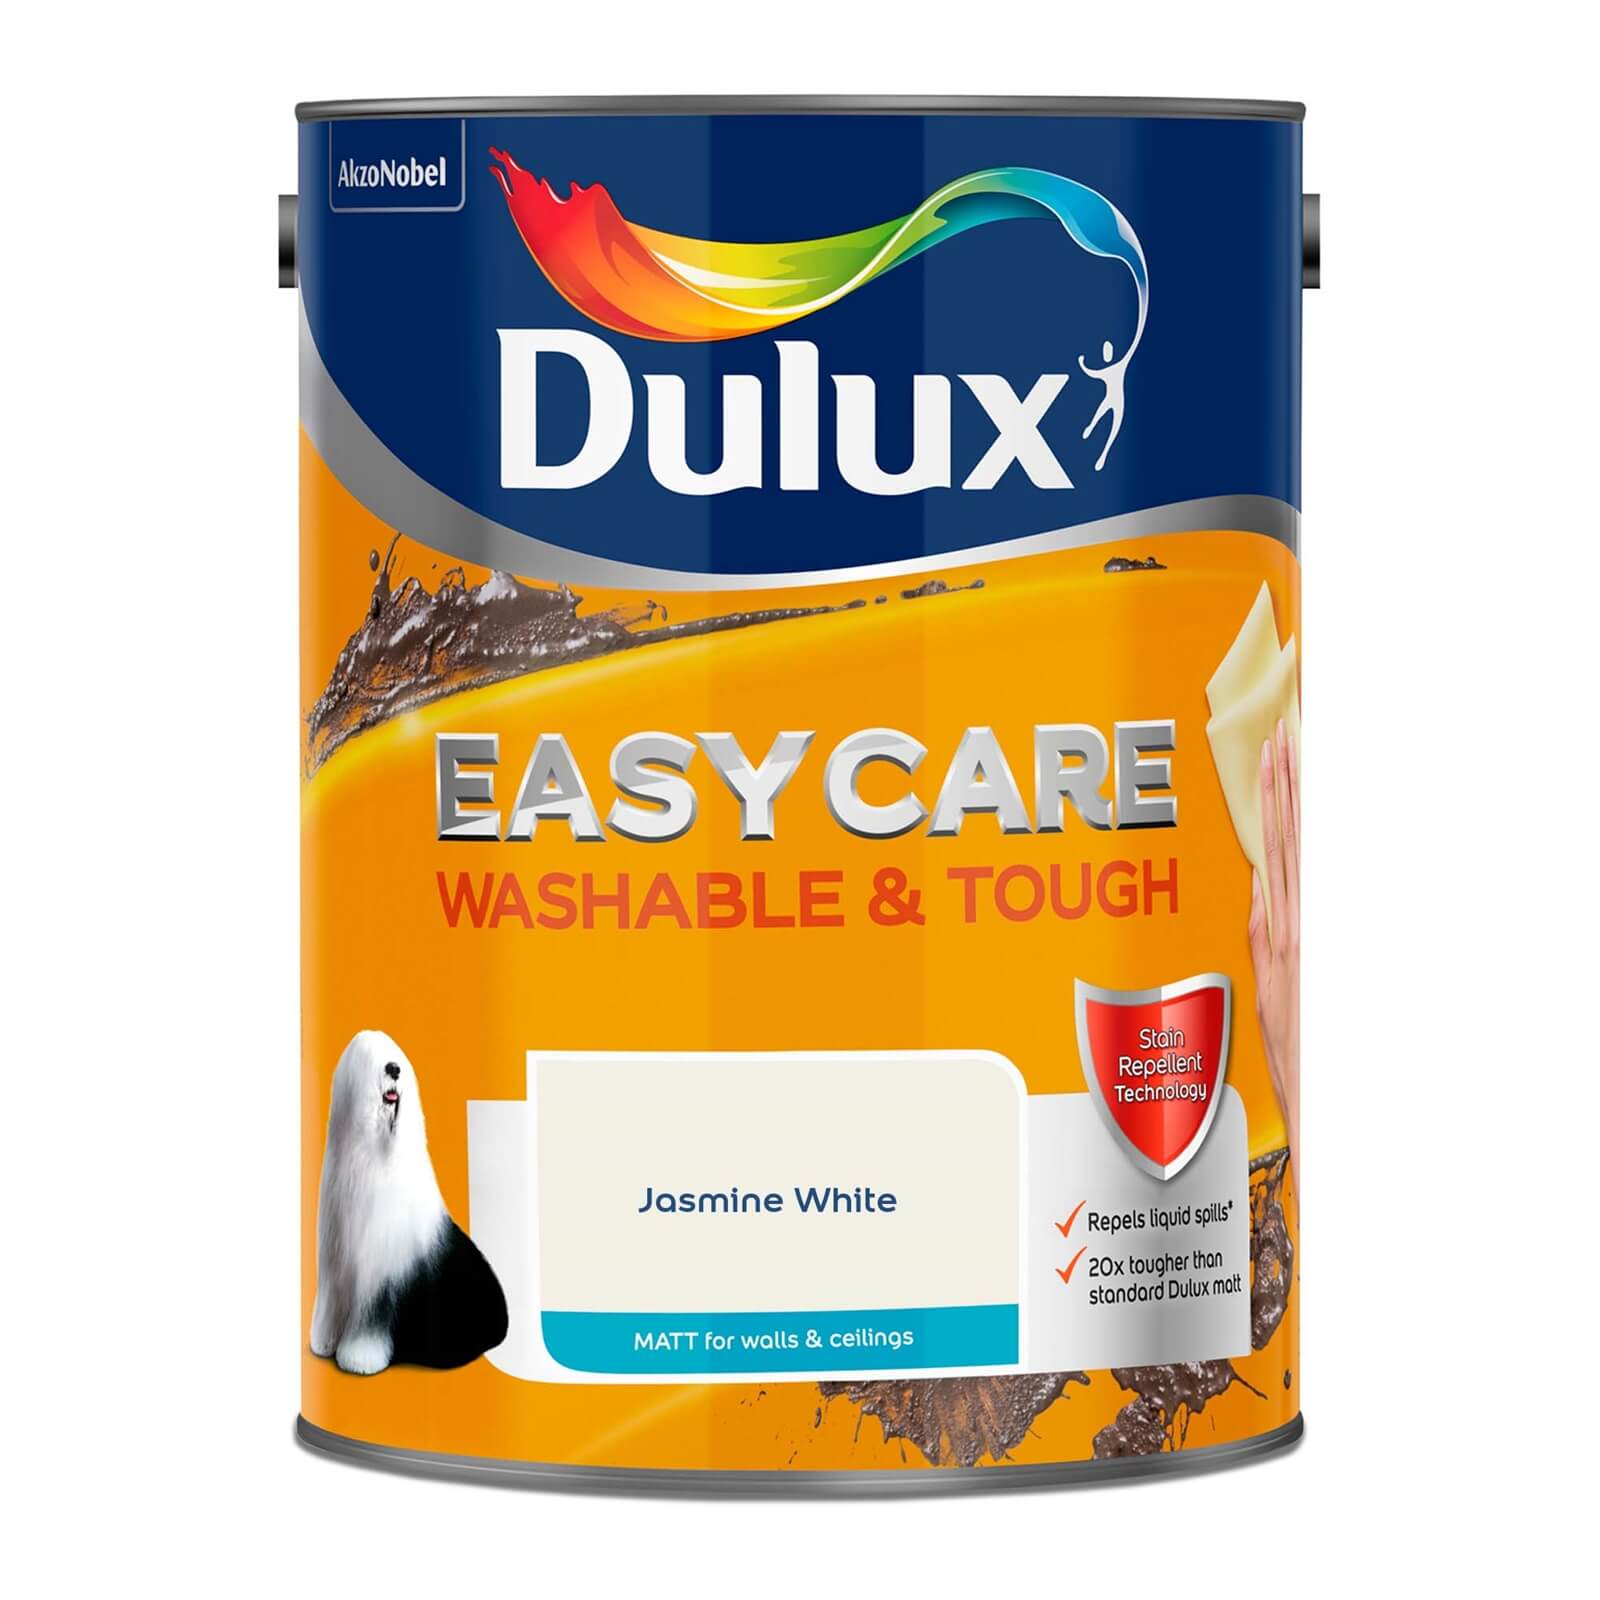 Dulux Easycare Washable & Tough Matt Paint Jasmine White - 5L